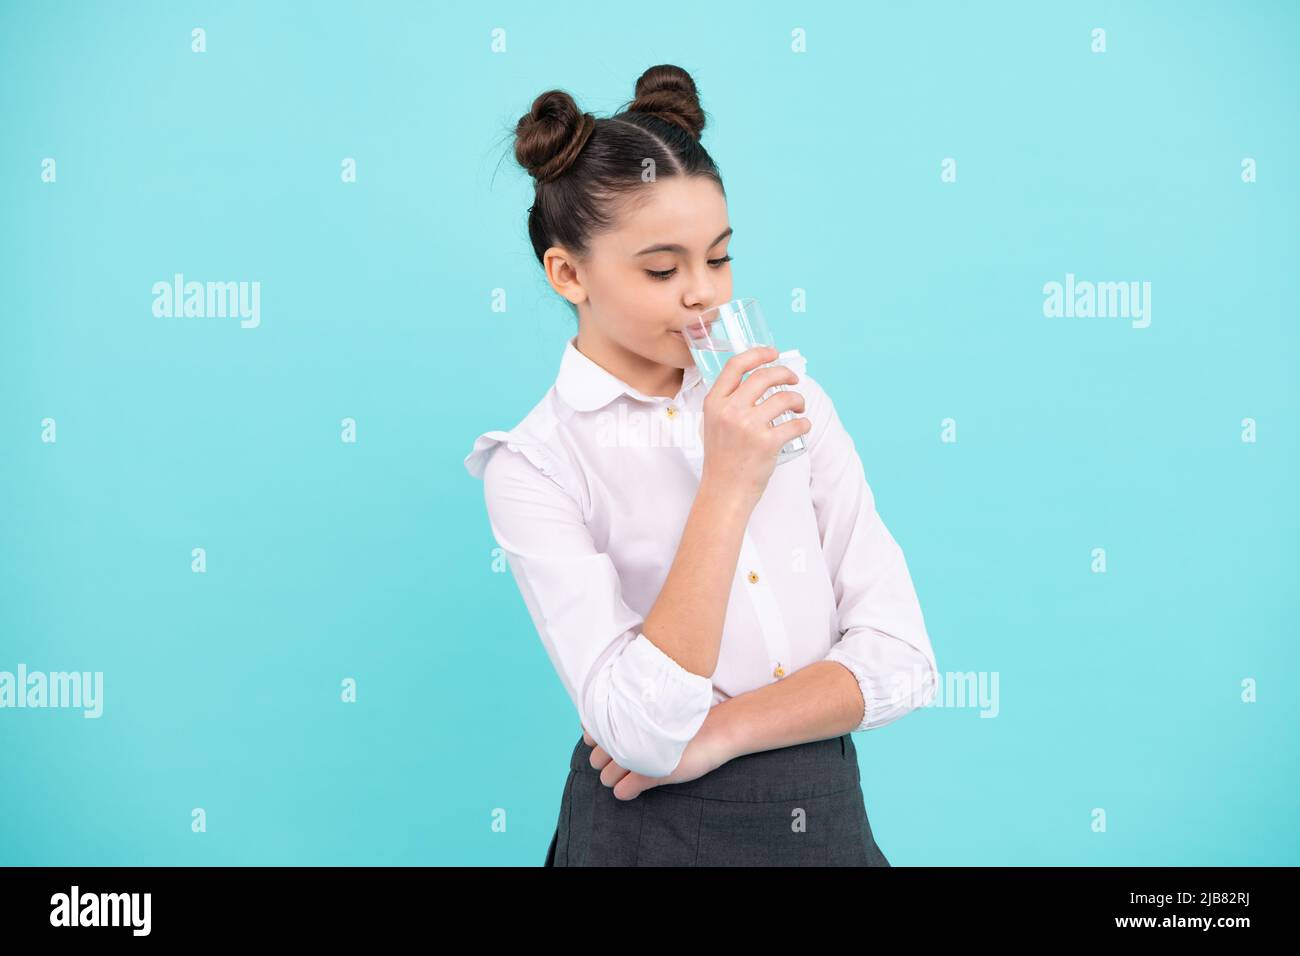 Une adolescente boit de l'eau à partir d'un verre isolé sur fond bleu. Vie quotidienne santé. Bonne adolescente, émotions positives et souriantes de la jeune fille. Banque D'Images